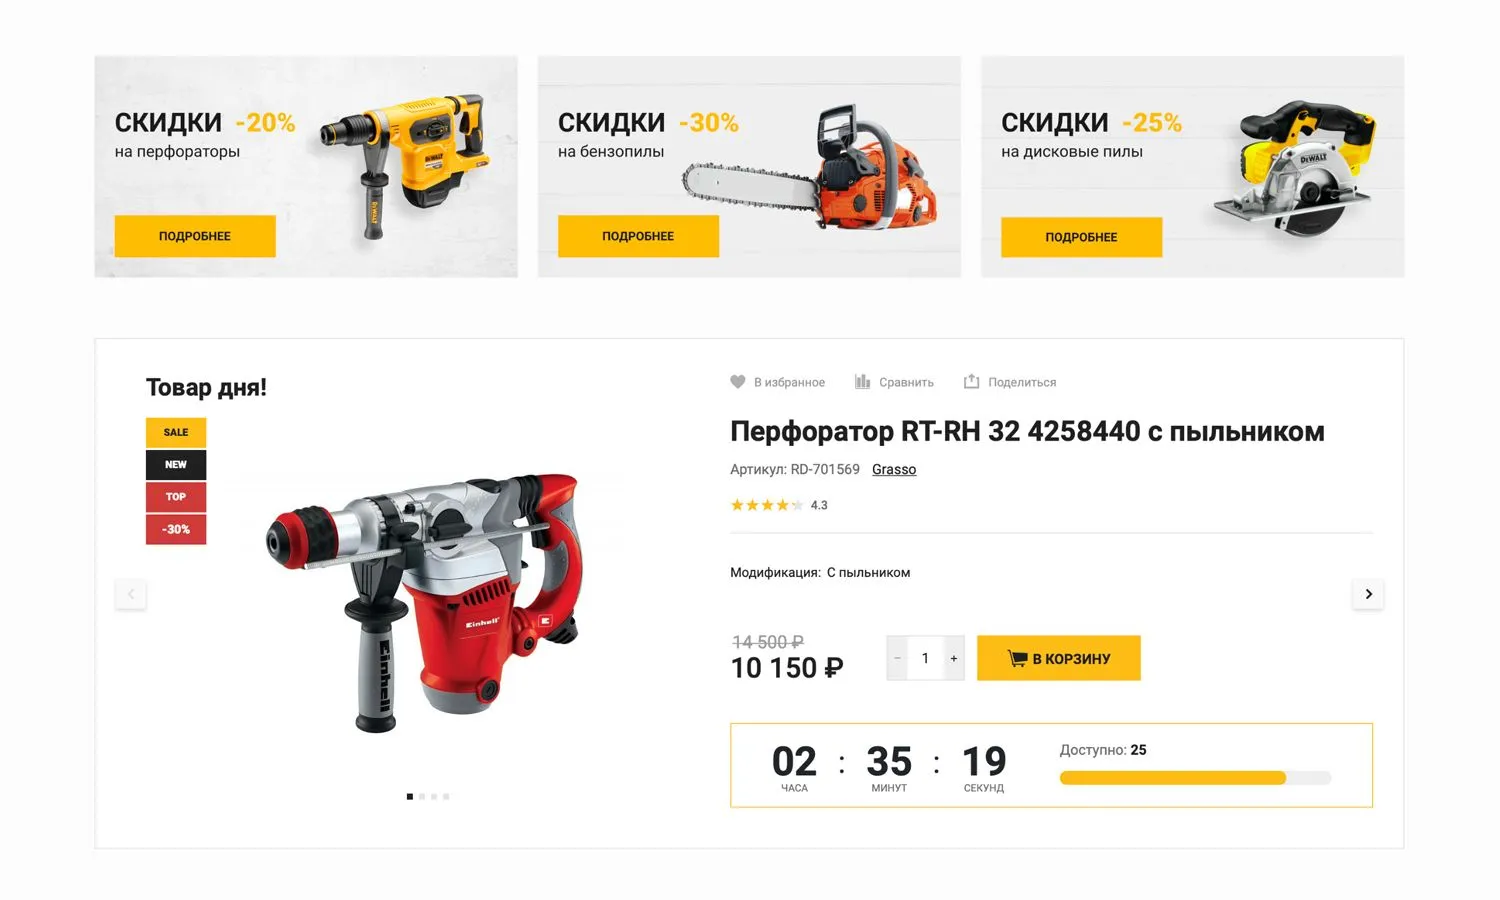 интернет-магазин электроинструментов, электрики, строительных материалов «крайт: инструменты.tools»